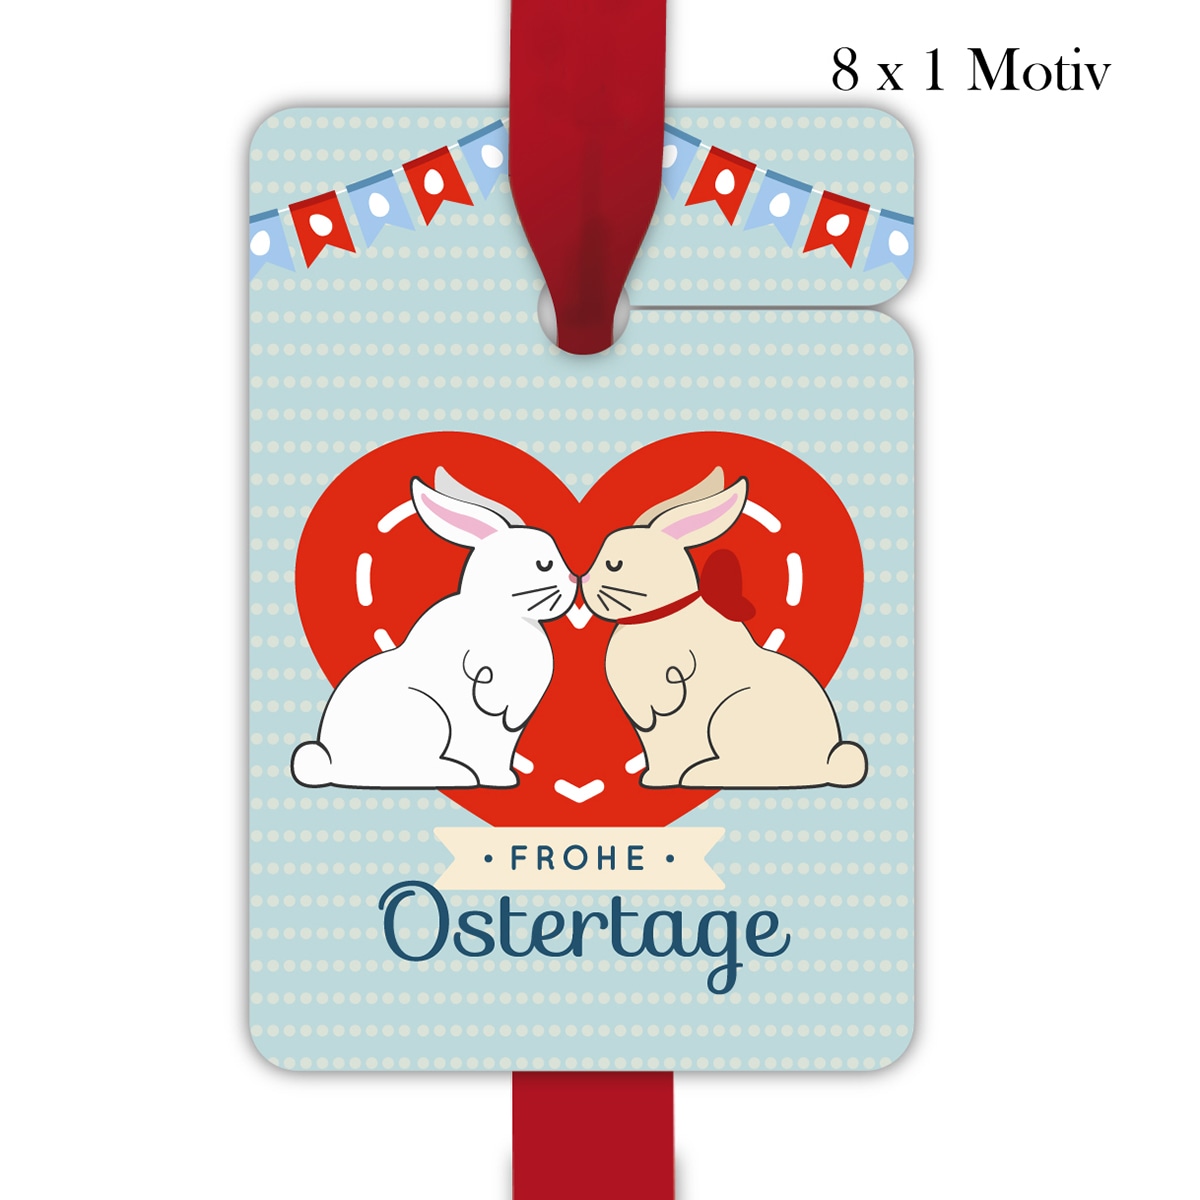 Kartenkaufrausch: Geschenkanhänger mit küssenden Osterhasen aus unserer Oster Papeterie in hellblau